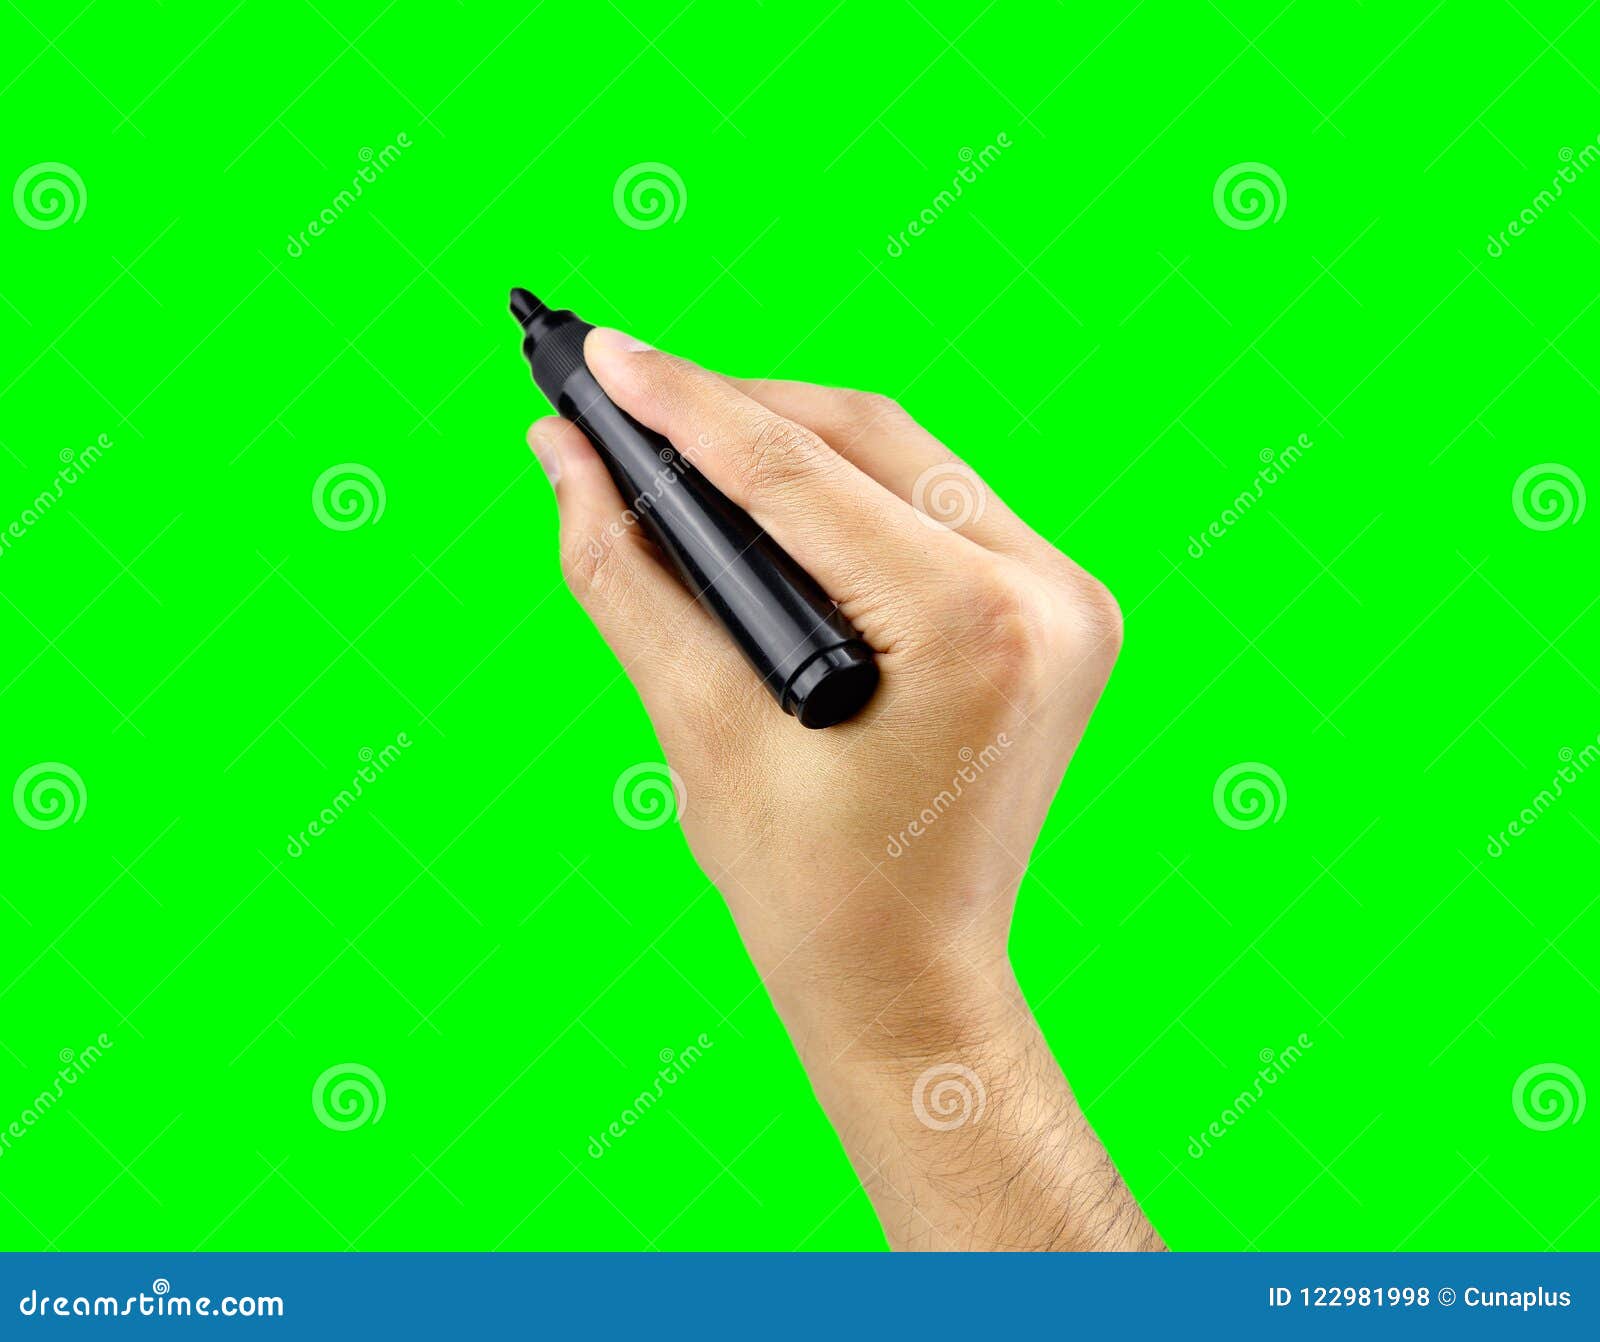 Ngòi bút đen mang đến cho bạn sự trầm lắng, nhưng cũng ẩn chứa trong nó những điều tươi đẹp và mới lạ. Hãy cùng khám phá những hình ảnh đầy nghệ thuật được vẽ bằng chiếc bút đen đậm chất cá tính.